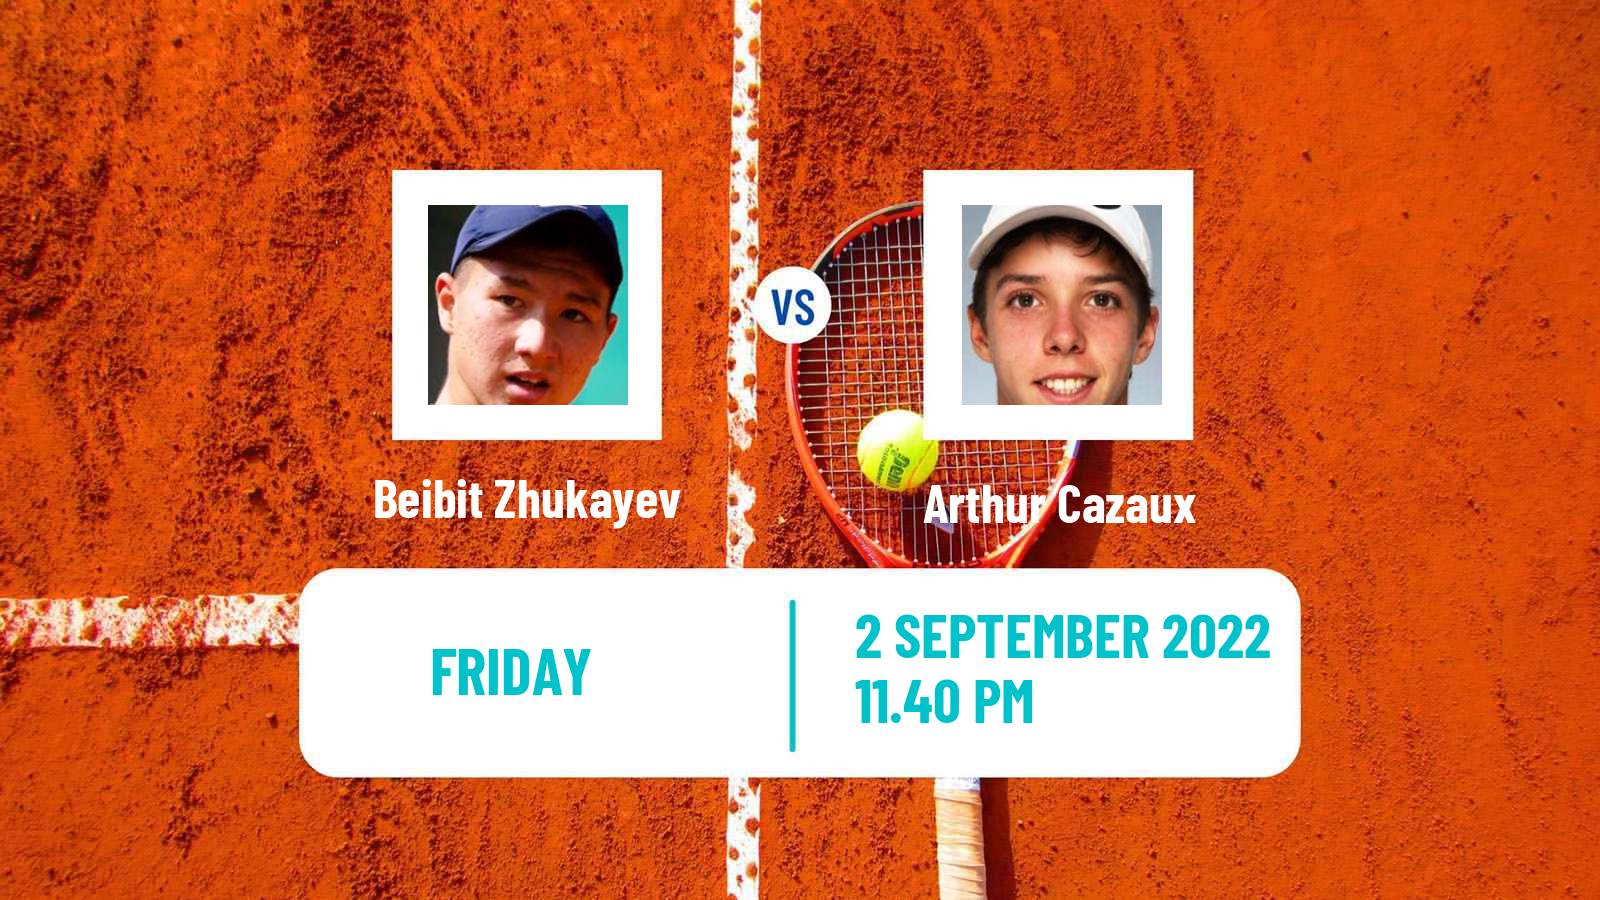 Tennis ATP Challenger Beibit Zhukayev - Arthur Cazaux